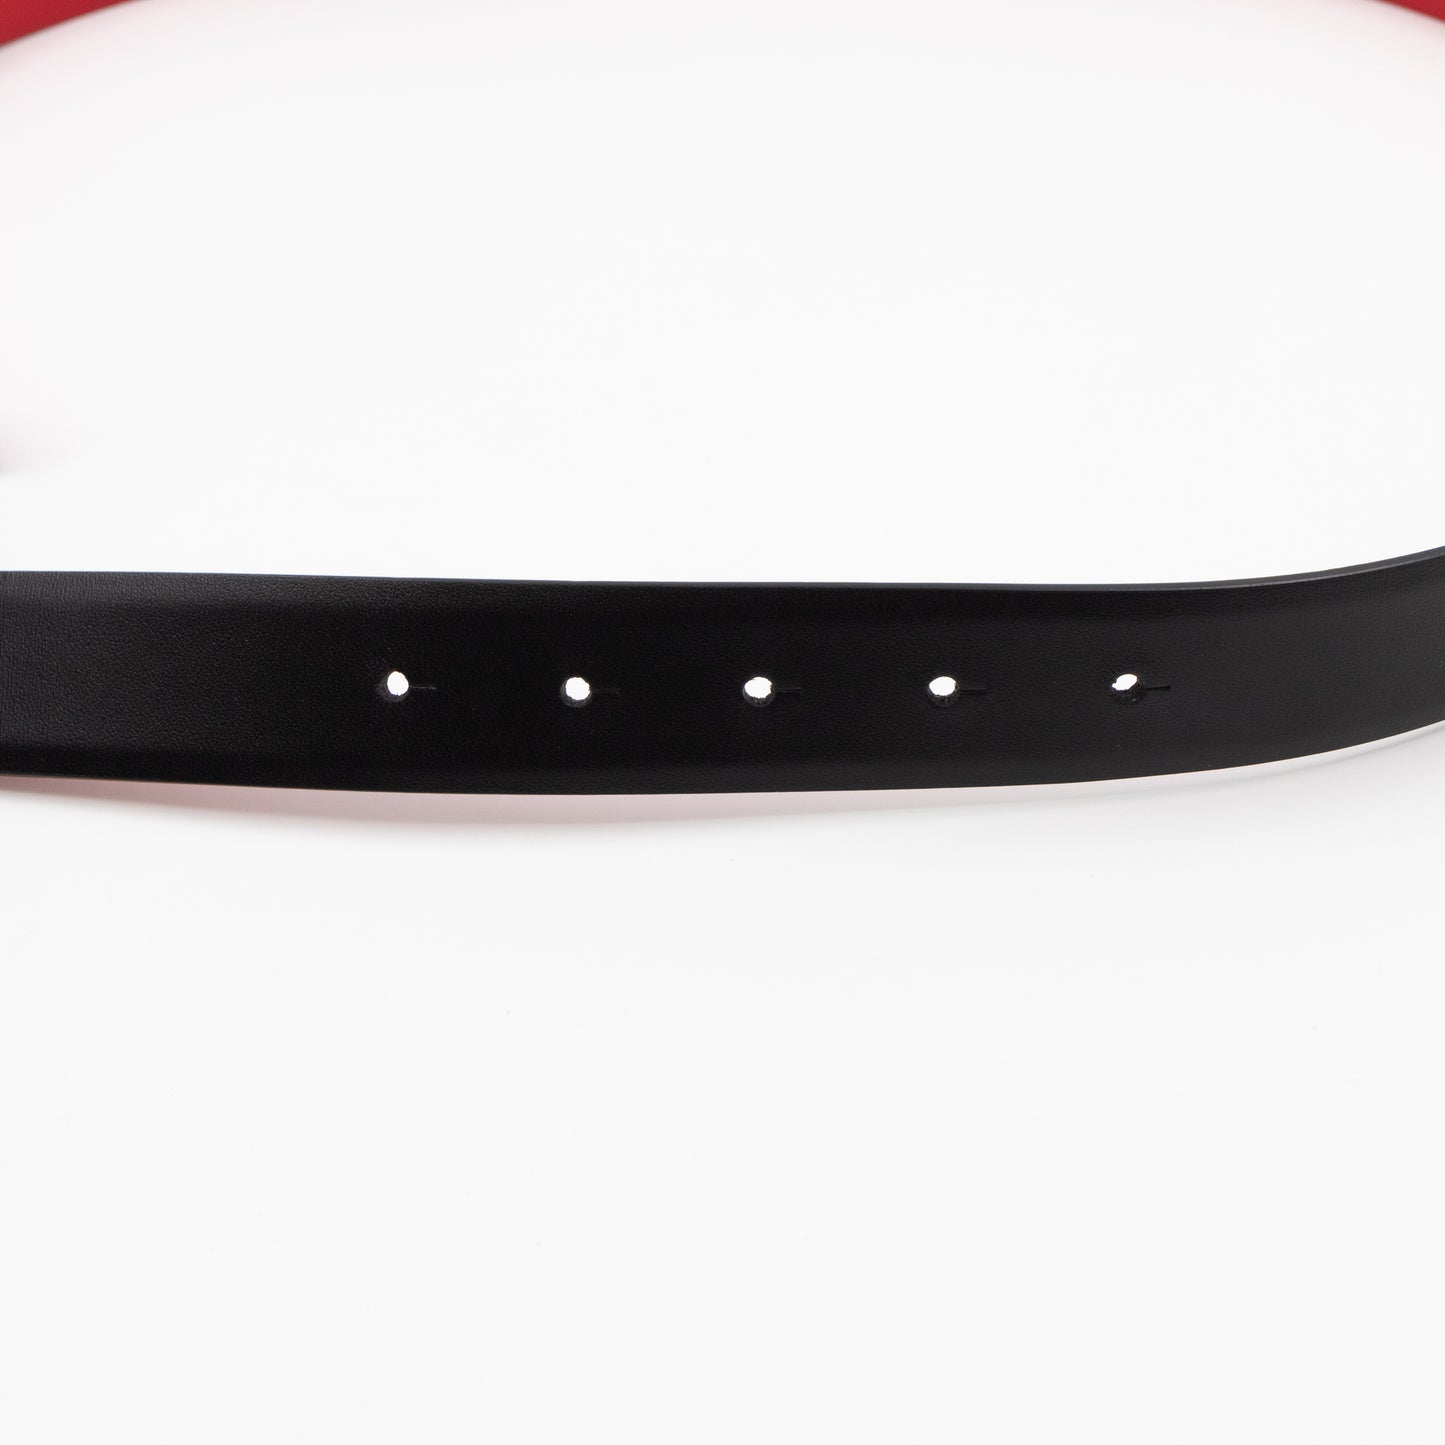 Reversible VLOGO Belt Black & Red Leather 90 cm